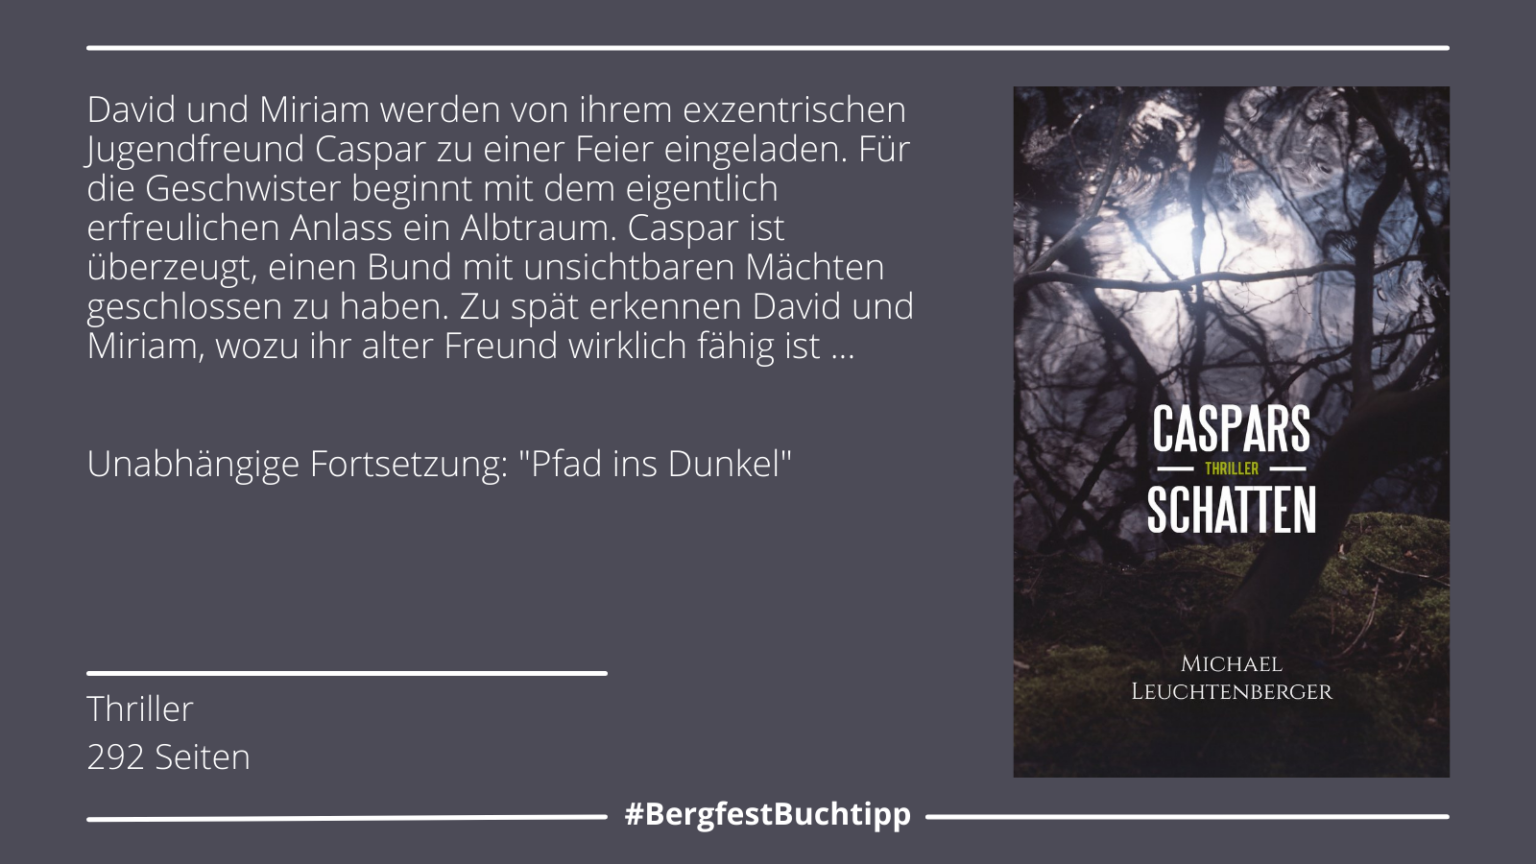 Woche 35: "Caspars Schatten" von Michael Leuchtenberger